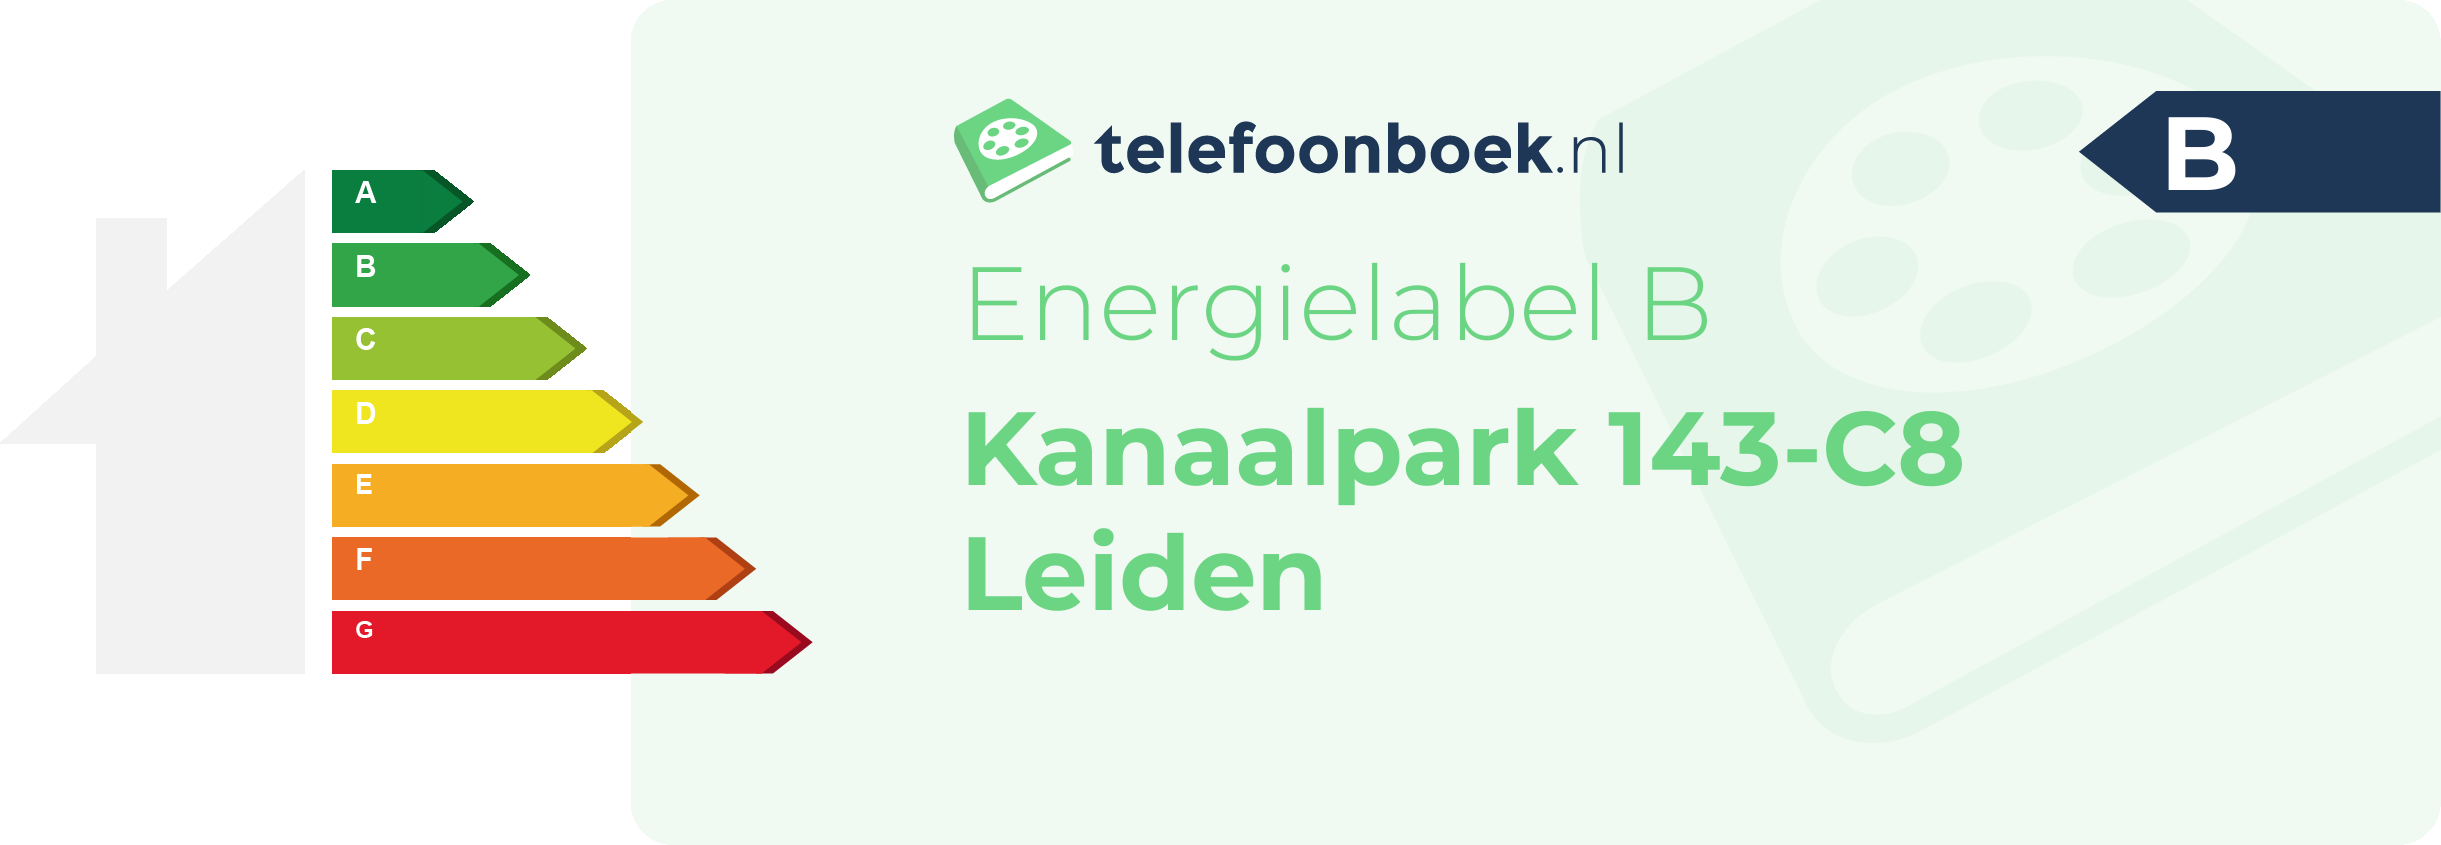 Energielabel Kanaalpark 143-C8 Leiden